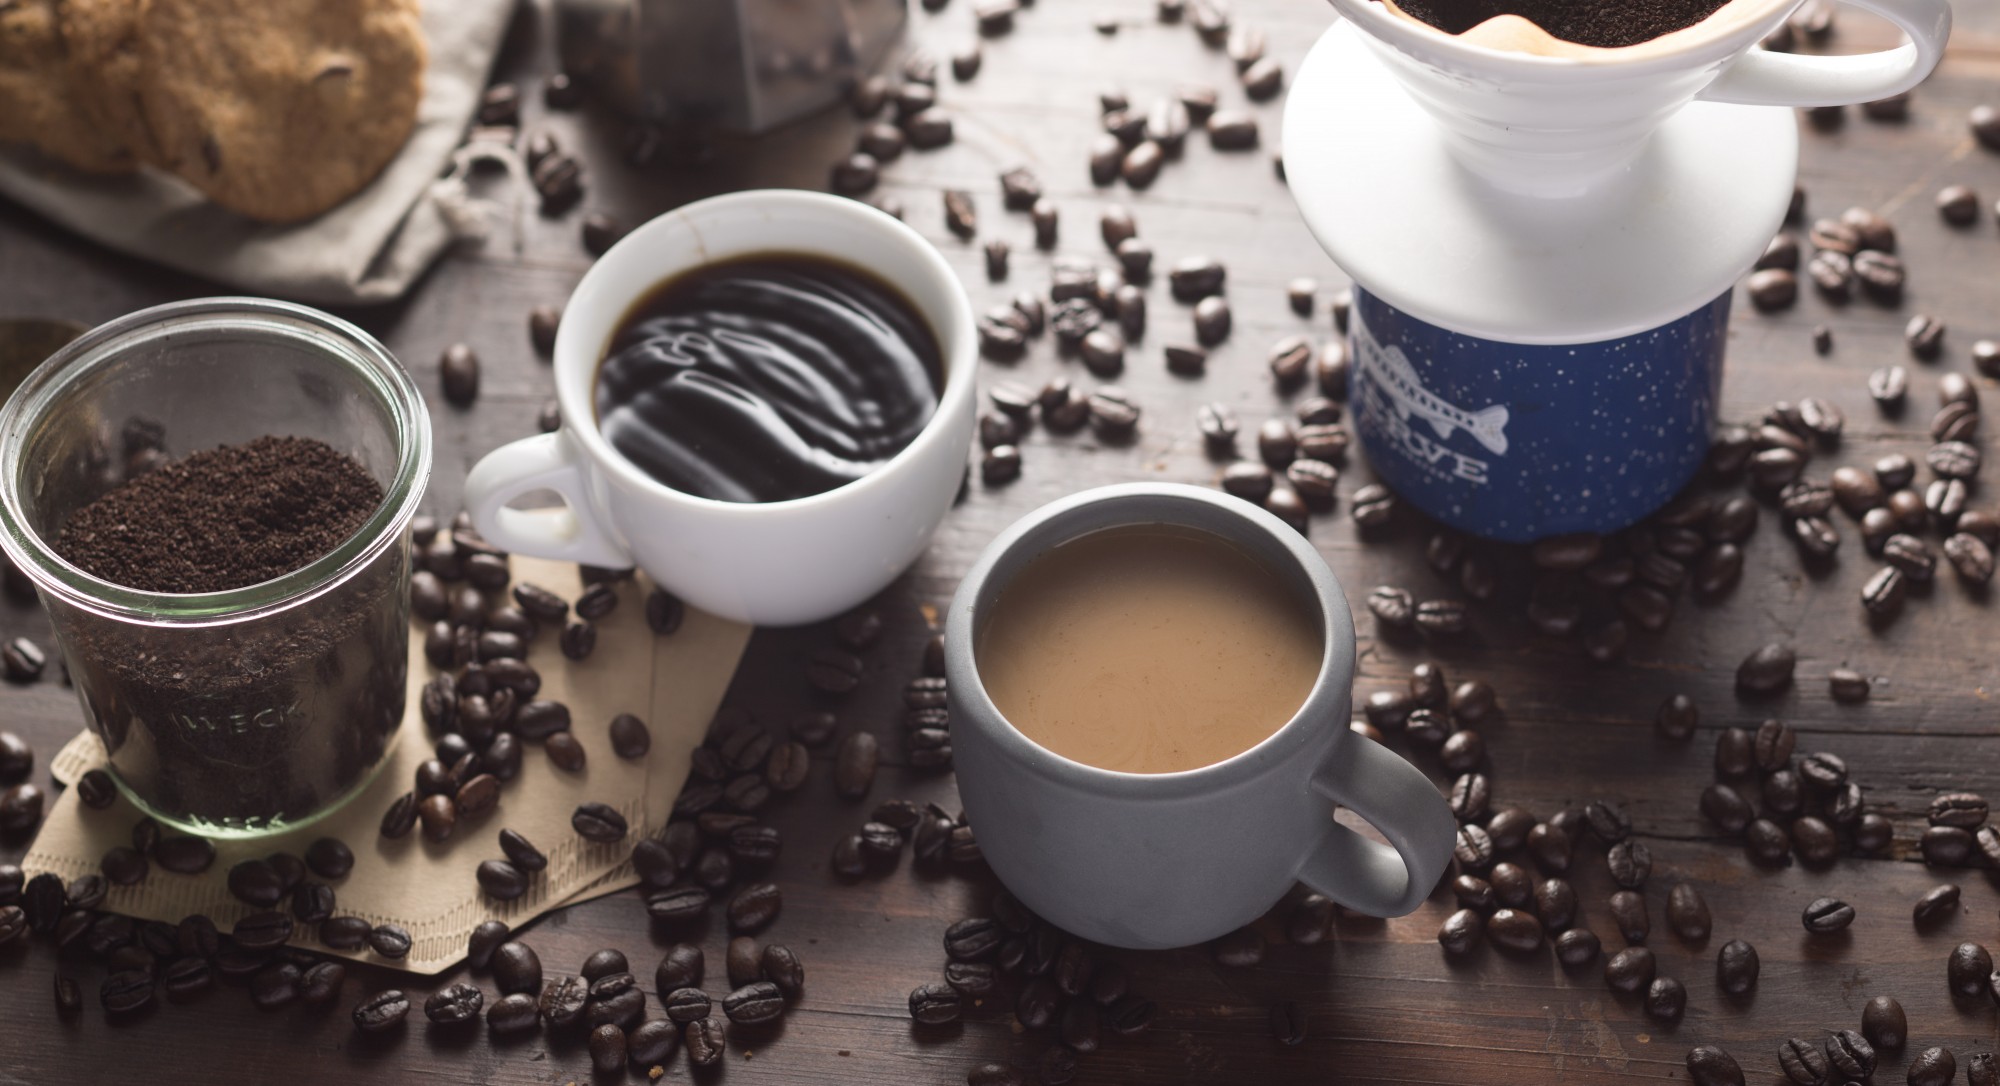 Армейской кофе. Кофе на сером фоне. Кофе перед сном. Бодрость от кофе. Изучение кофе.